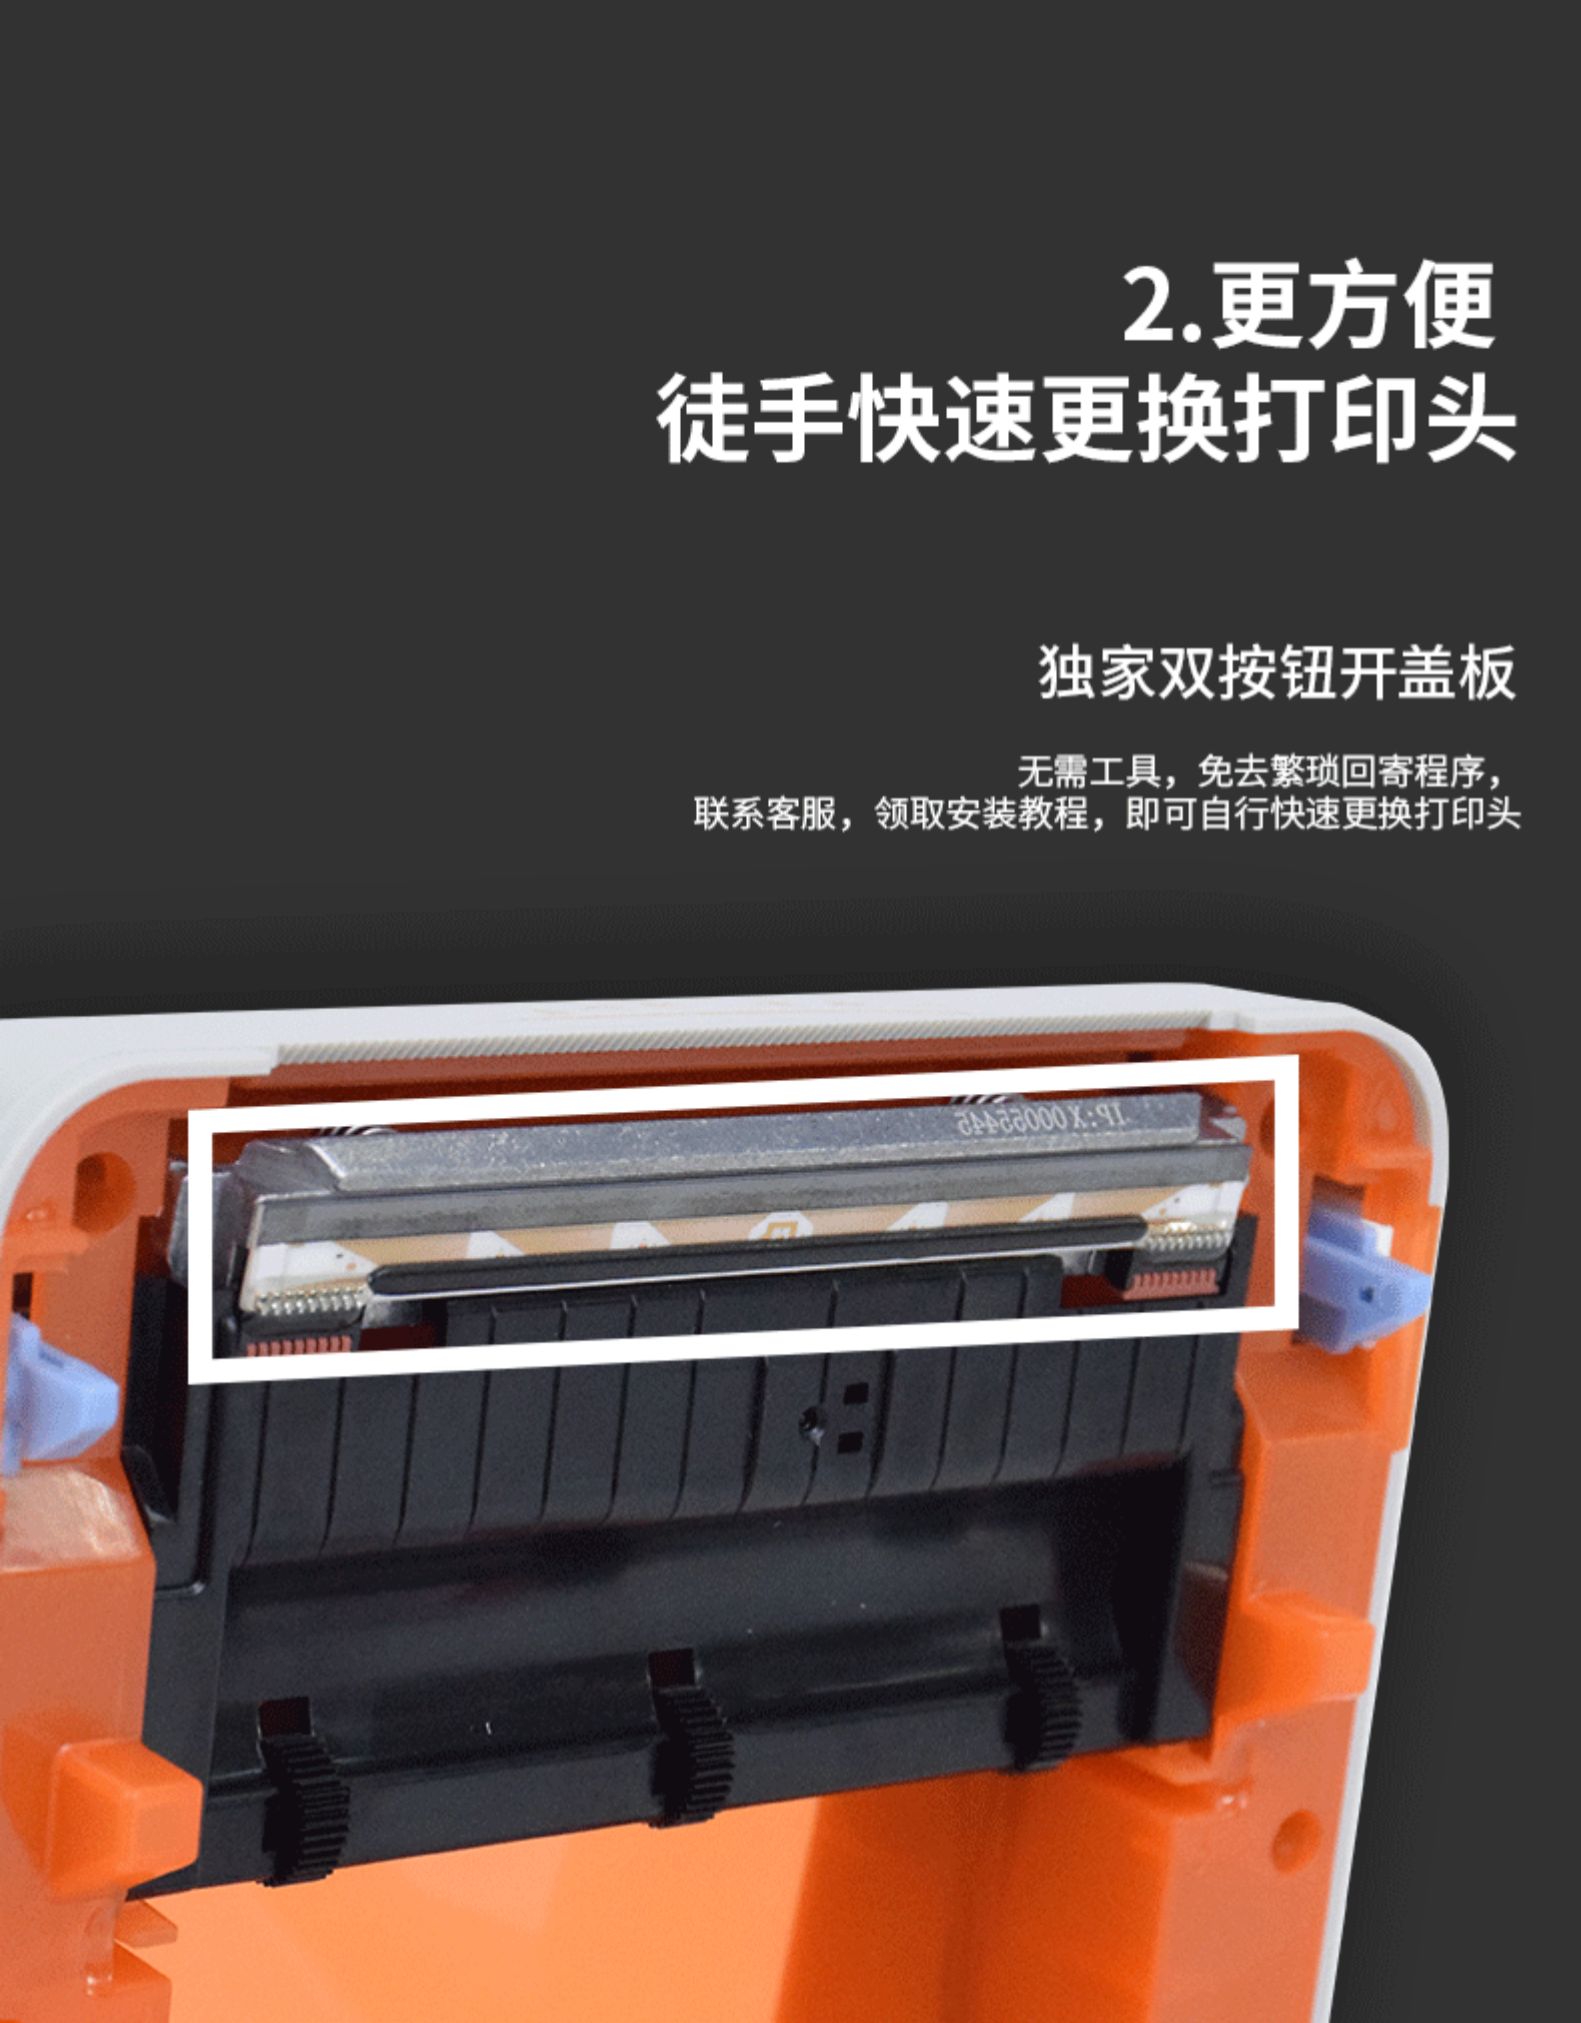 Lúa mì nhanh KM188 mới niêm yết mặt điện tử máy in đơn tân binh SF Yuantong Shentong Taobao văn phòng thương mại HD mã vạch tự dính giấy in nhanh nhãn đơn - Thiết bị mua / quét mã vạch